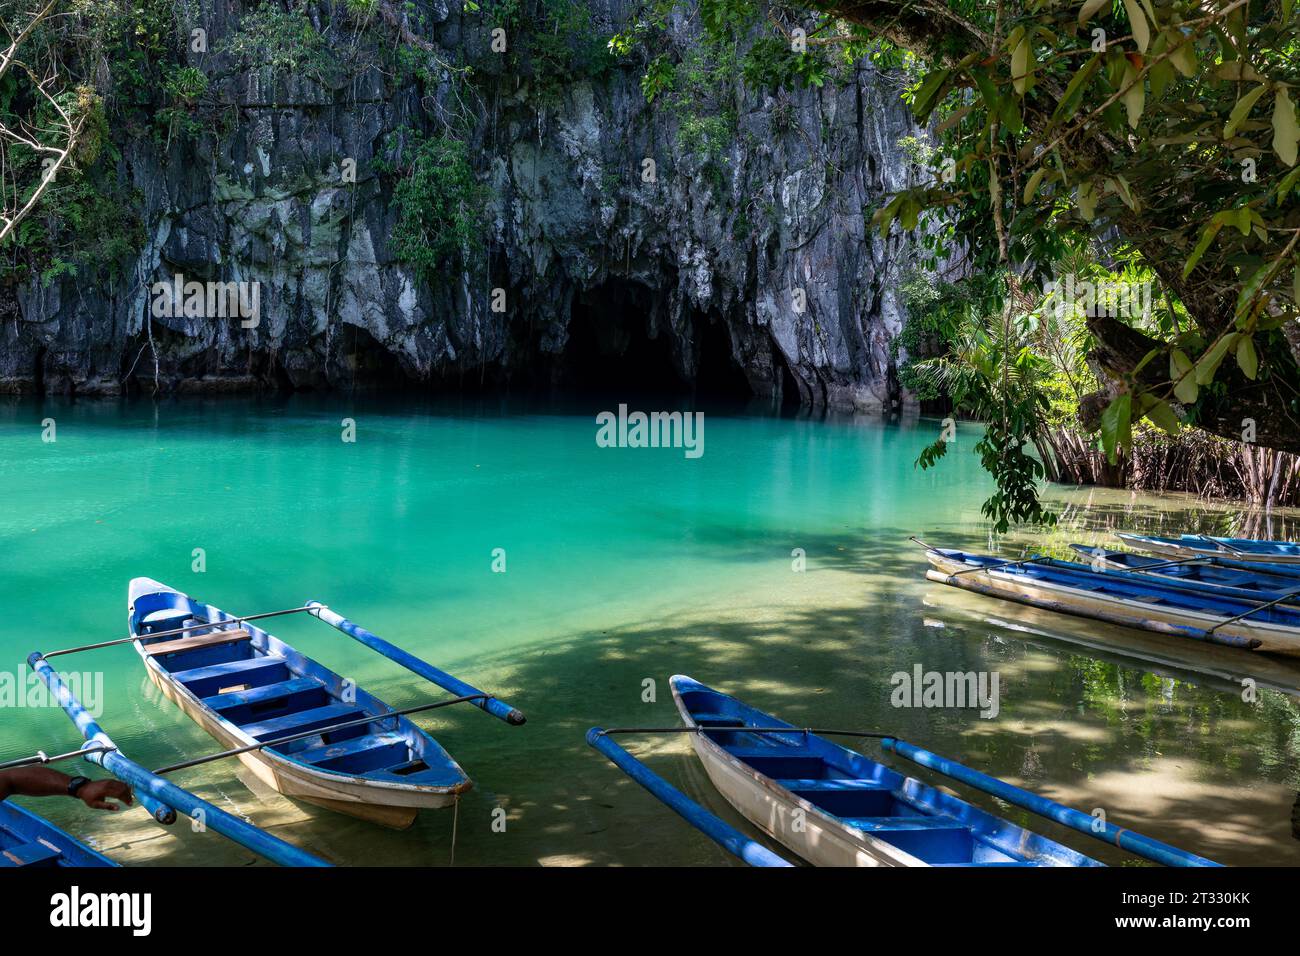 Le barche blu si trovano in acque blu e verdi in attesa di esplorare le grotte e il sistema di caverne del fiume sotterraneo Foto Stock